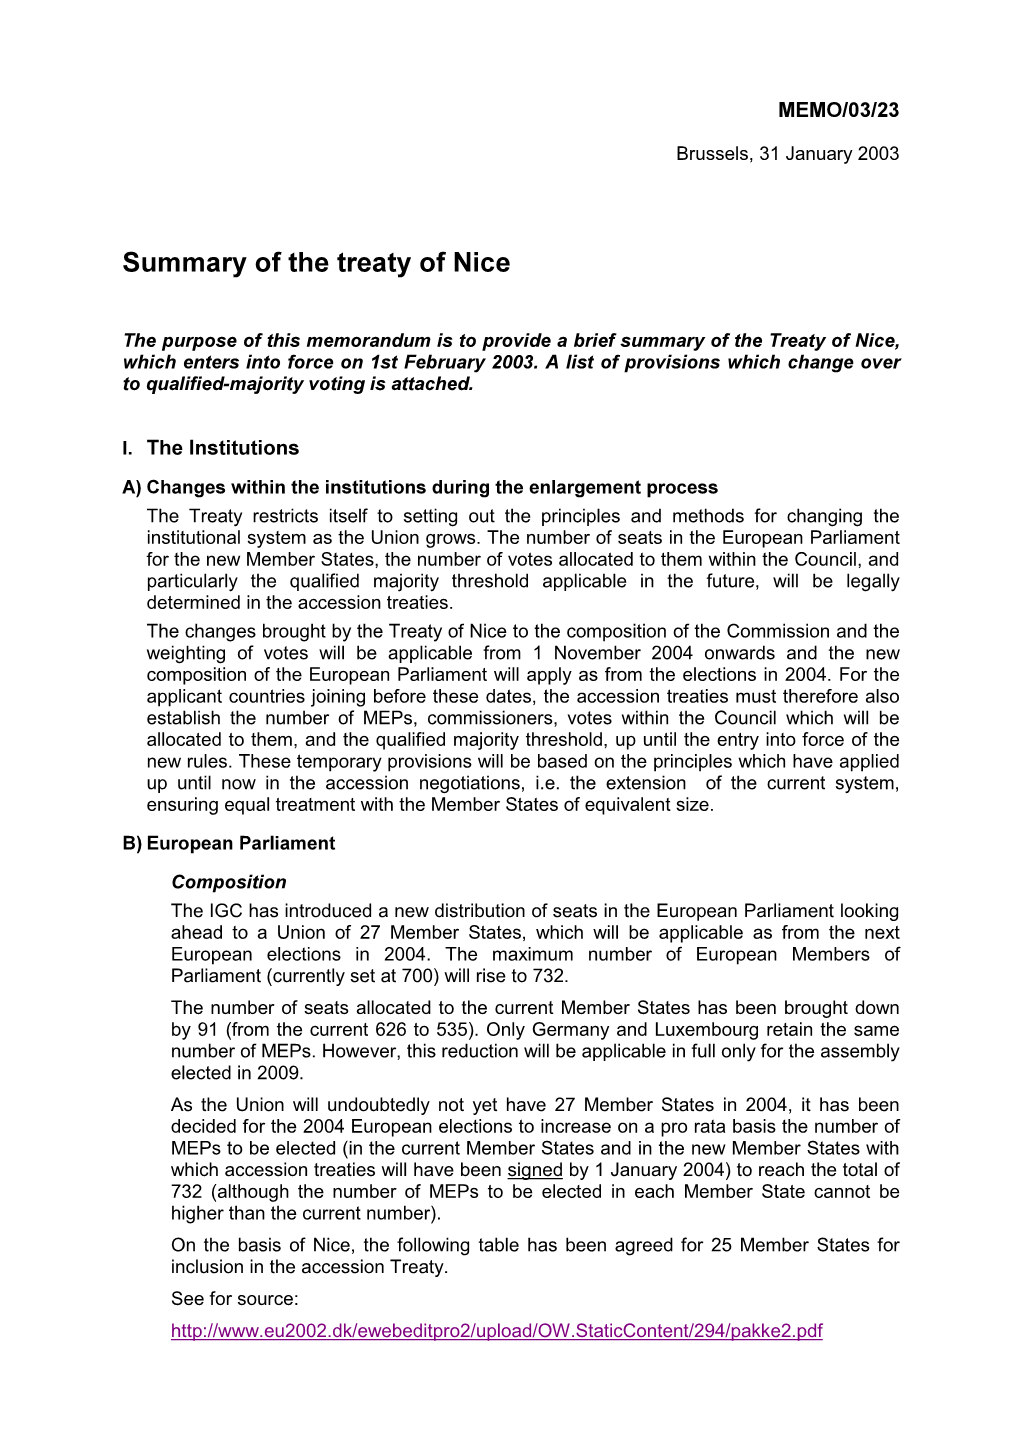 Summary of the Treaty of Nice